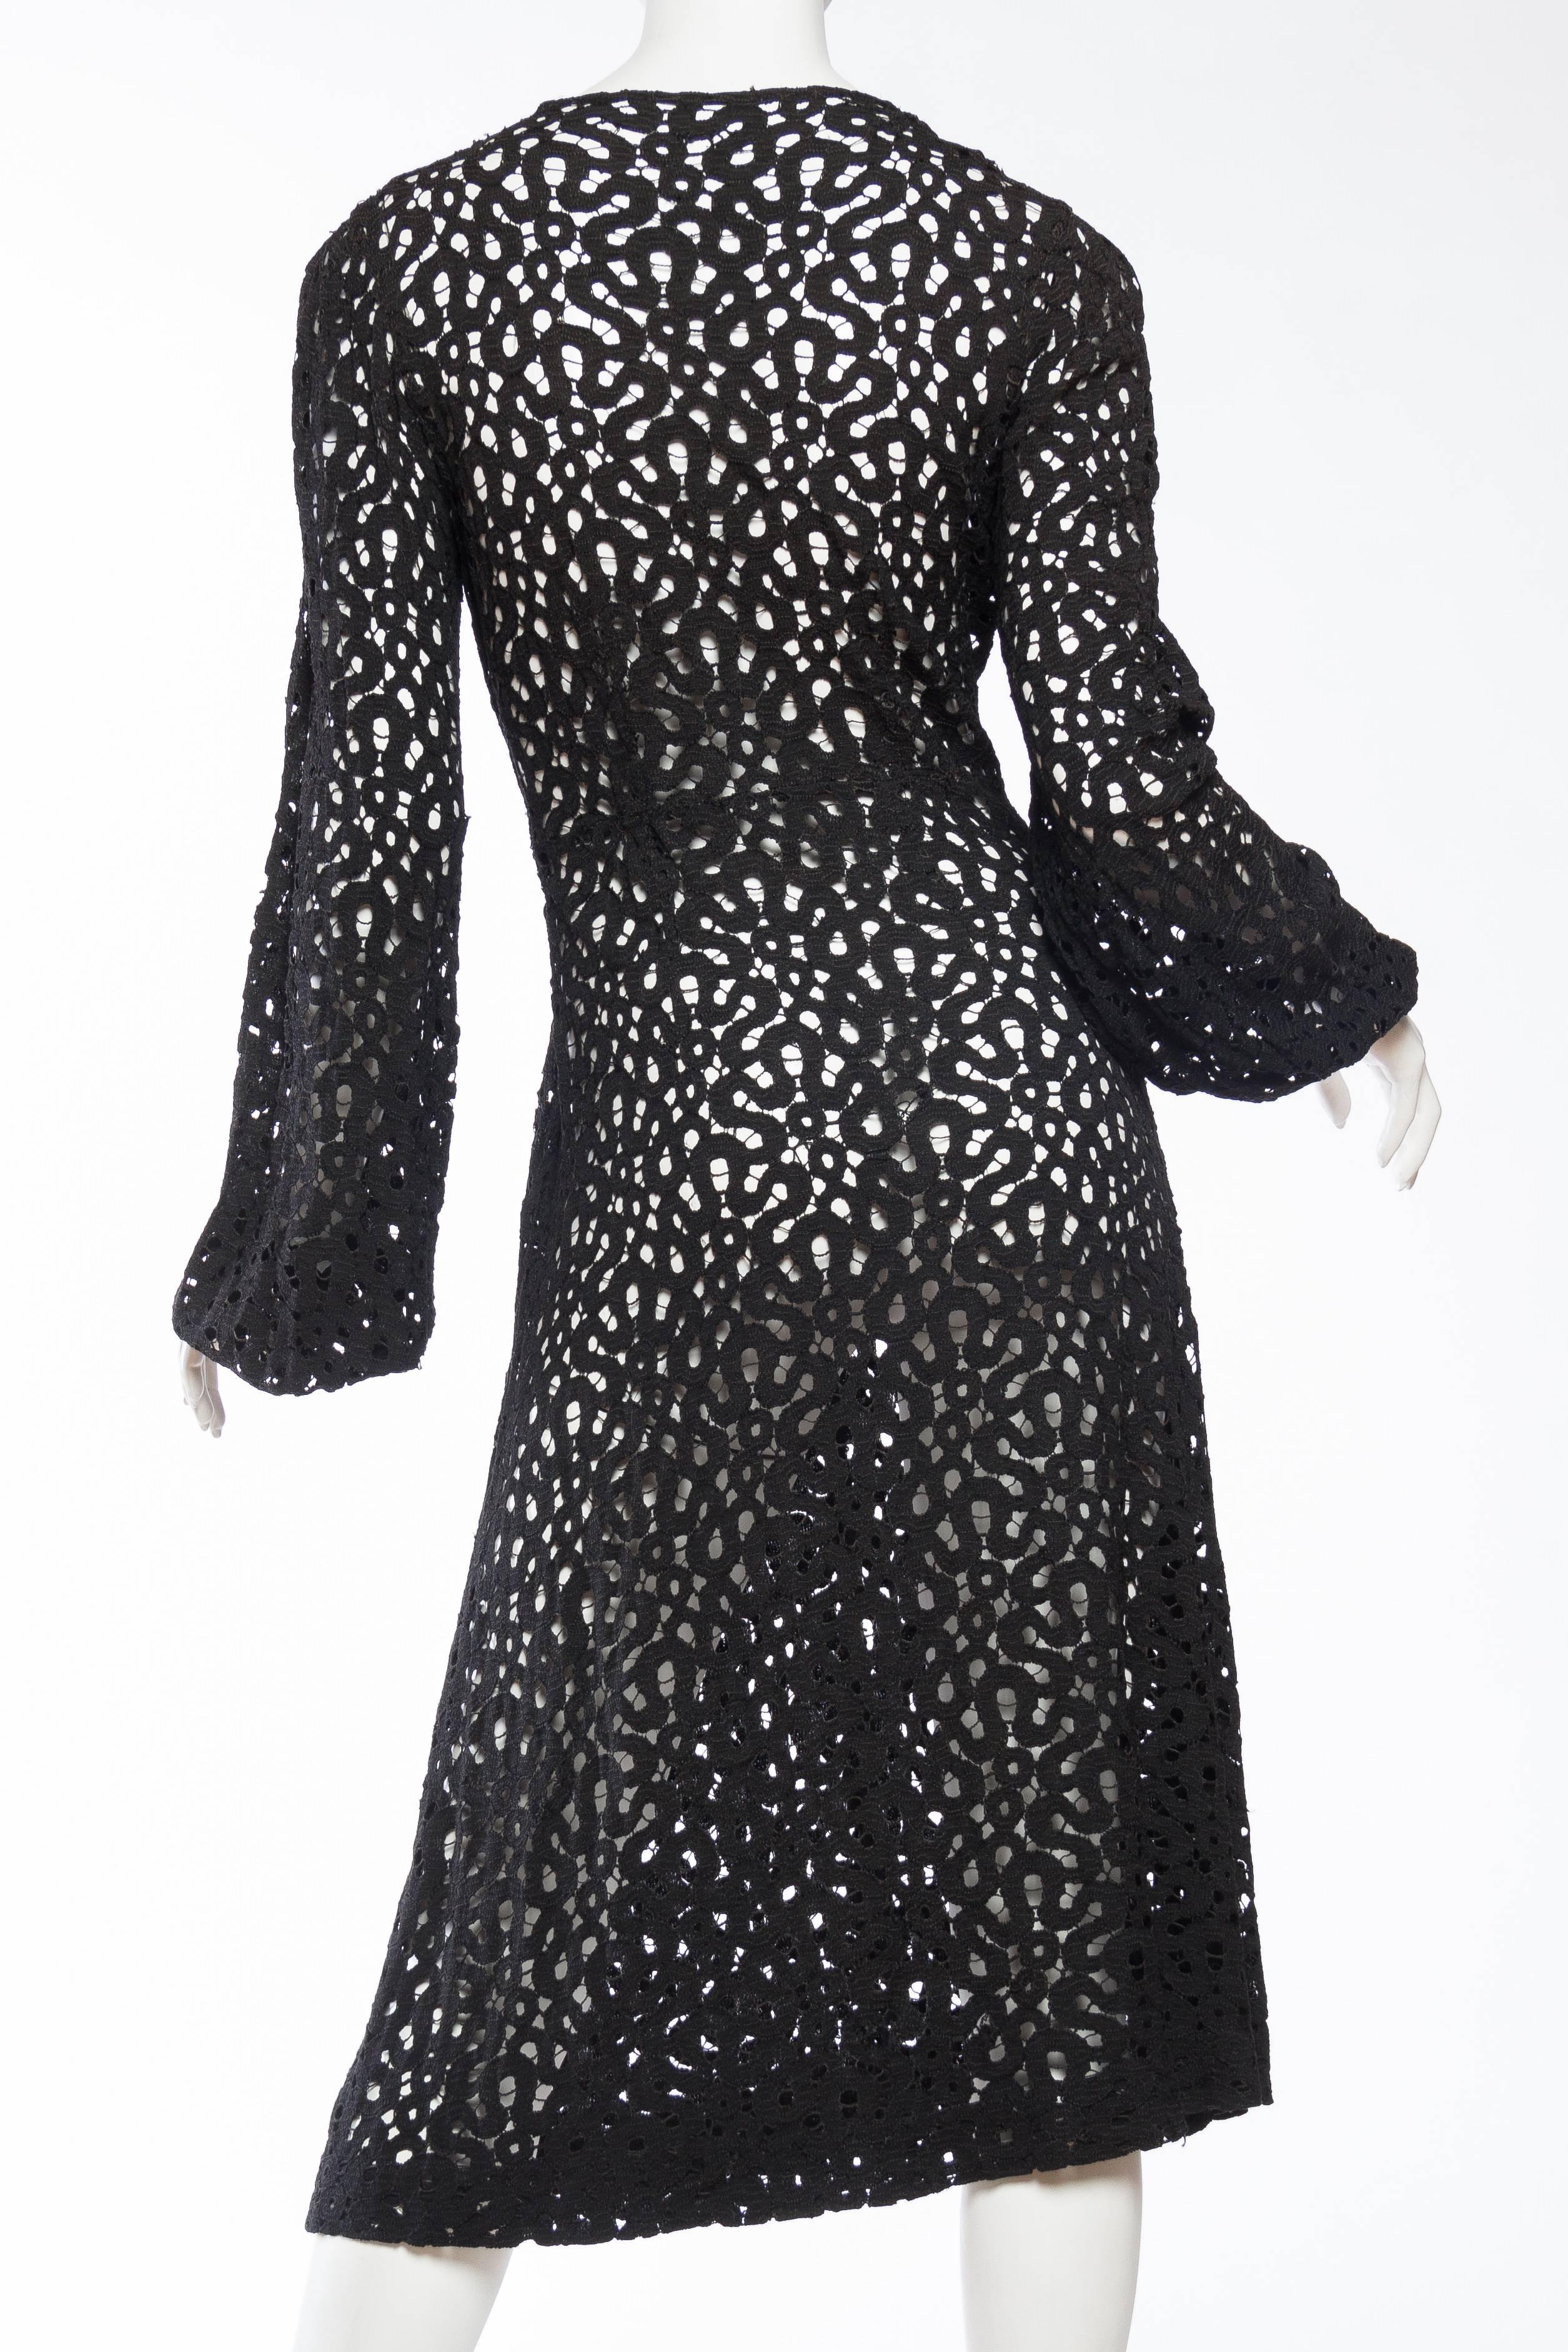 1930s Lace Dress with Art-Deco Details 1